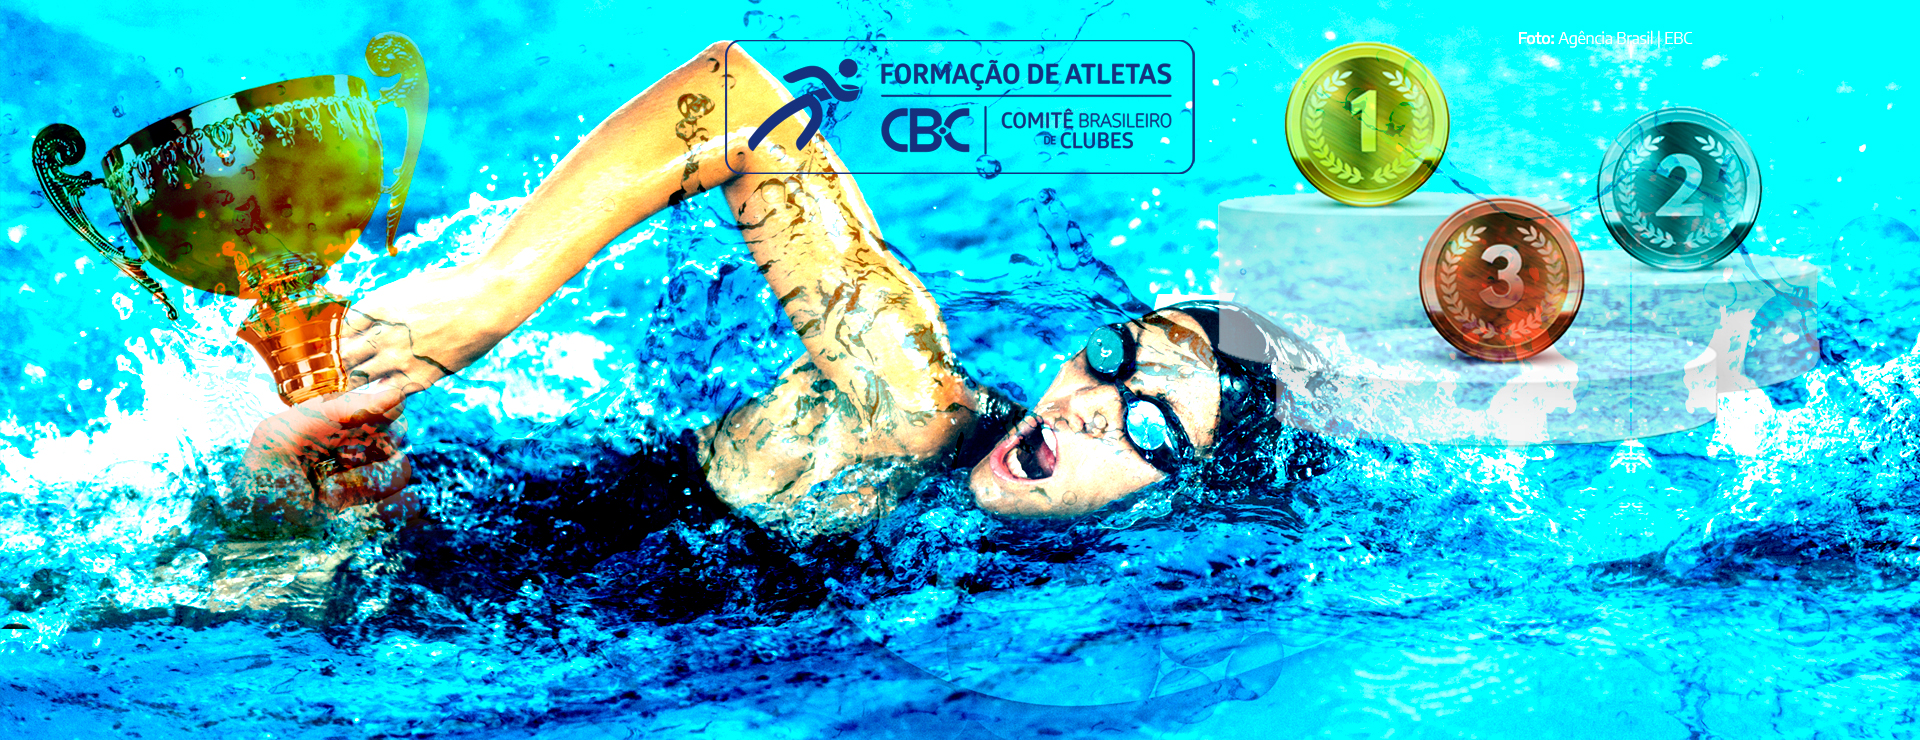 Minas Tênis Clube-MG segue na liderança do Quadro Geral de Medalhas do CBC após o CBI de Natação Troféu José Finkel